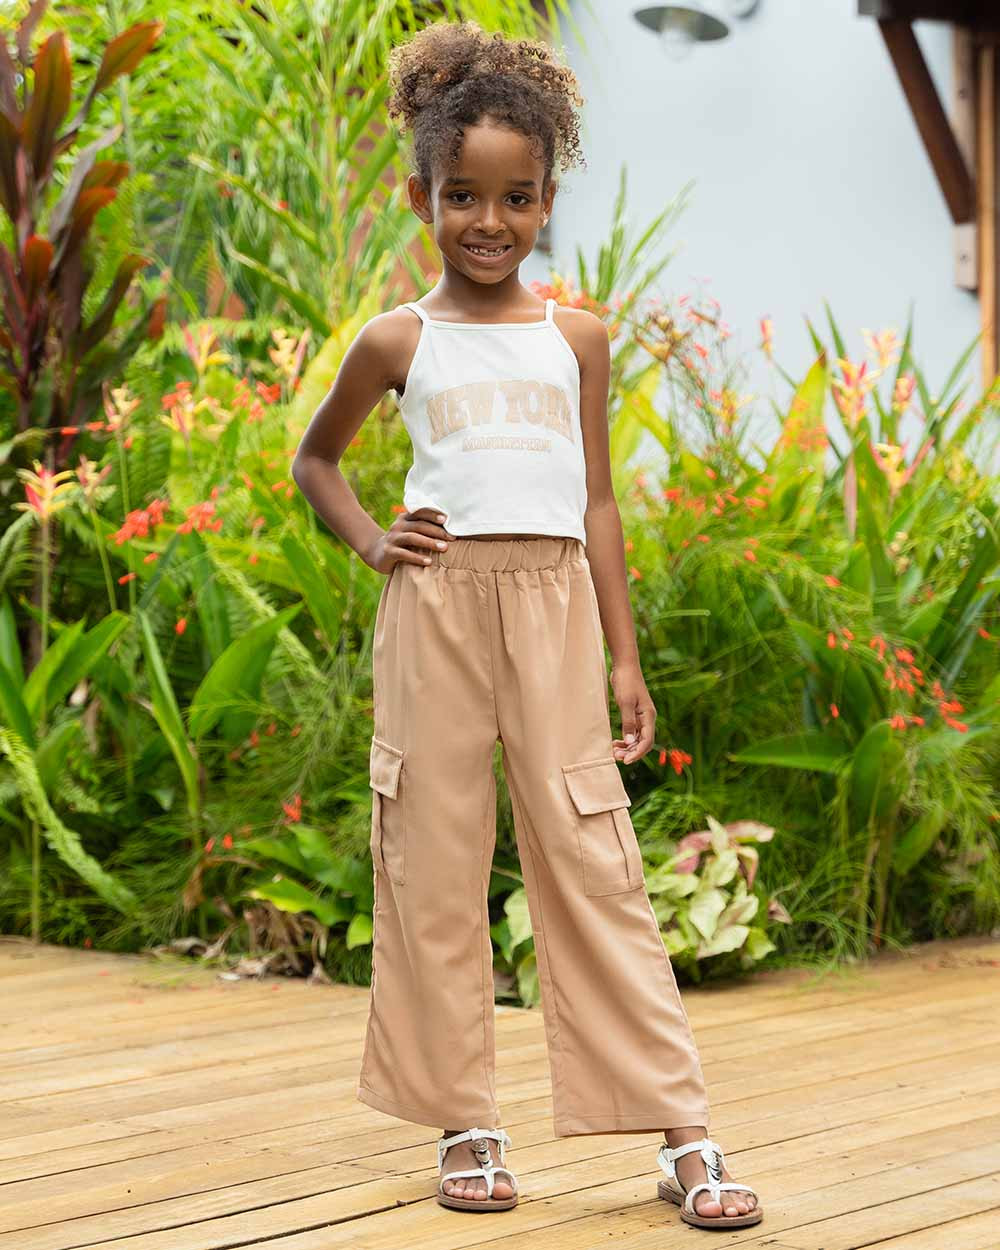 <p>Ensemble pantalon style streetwear pour petite fille. Haut à message NEW YORK et pantalon fluide uni type jogging / cargo.</p>